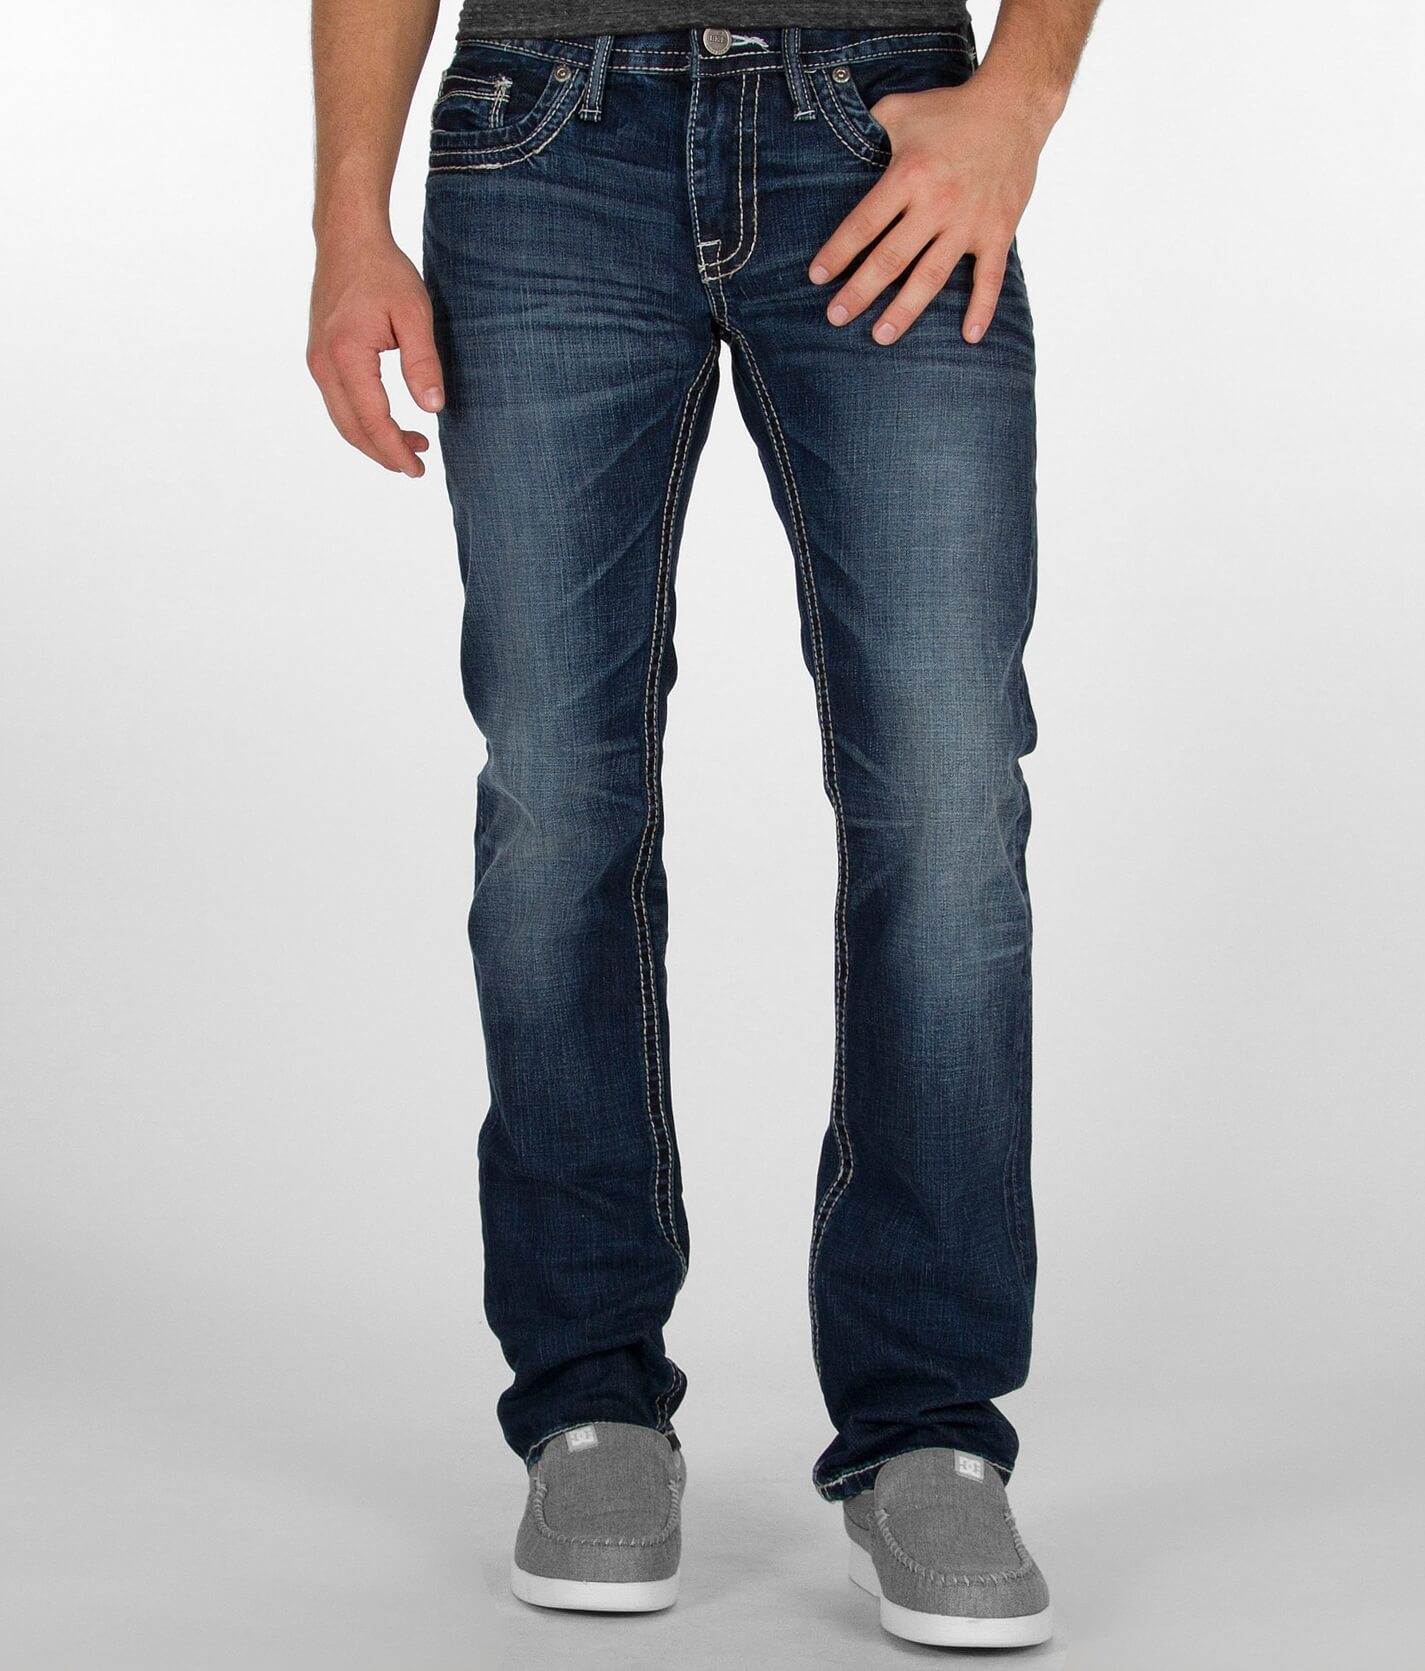 bke aaron jeans